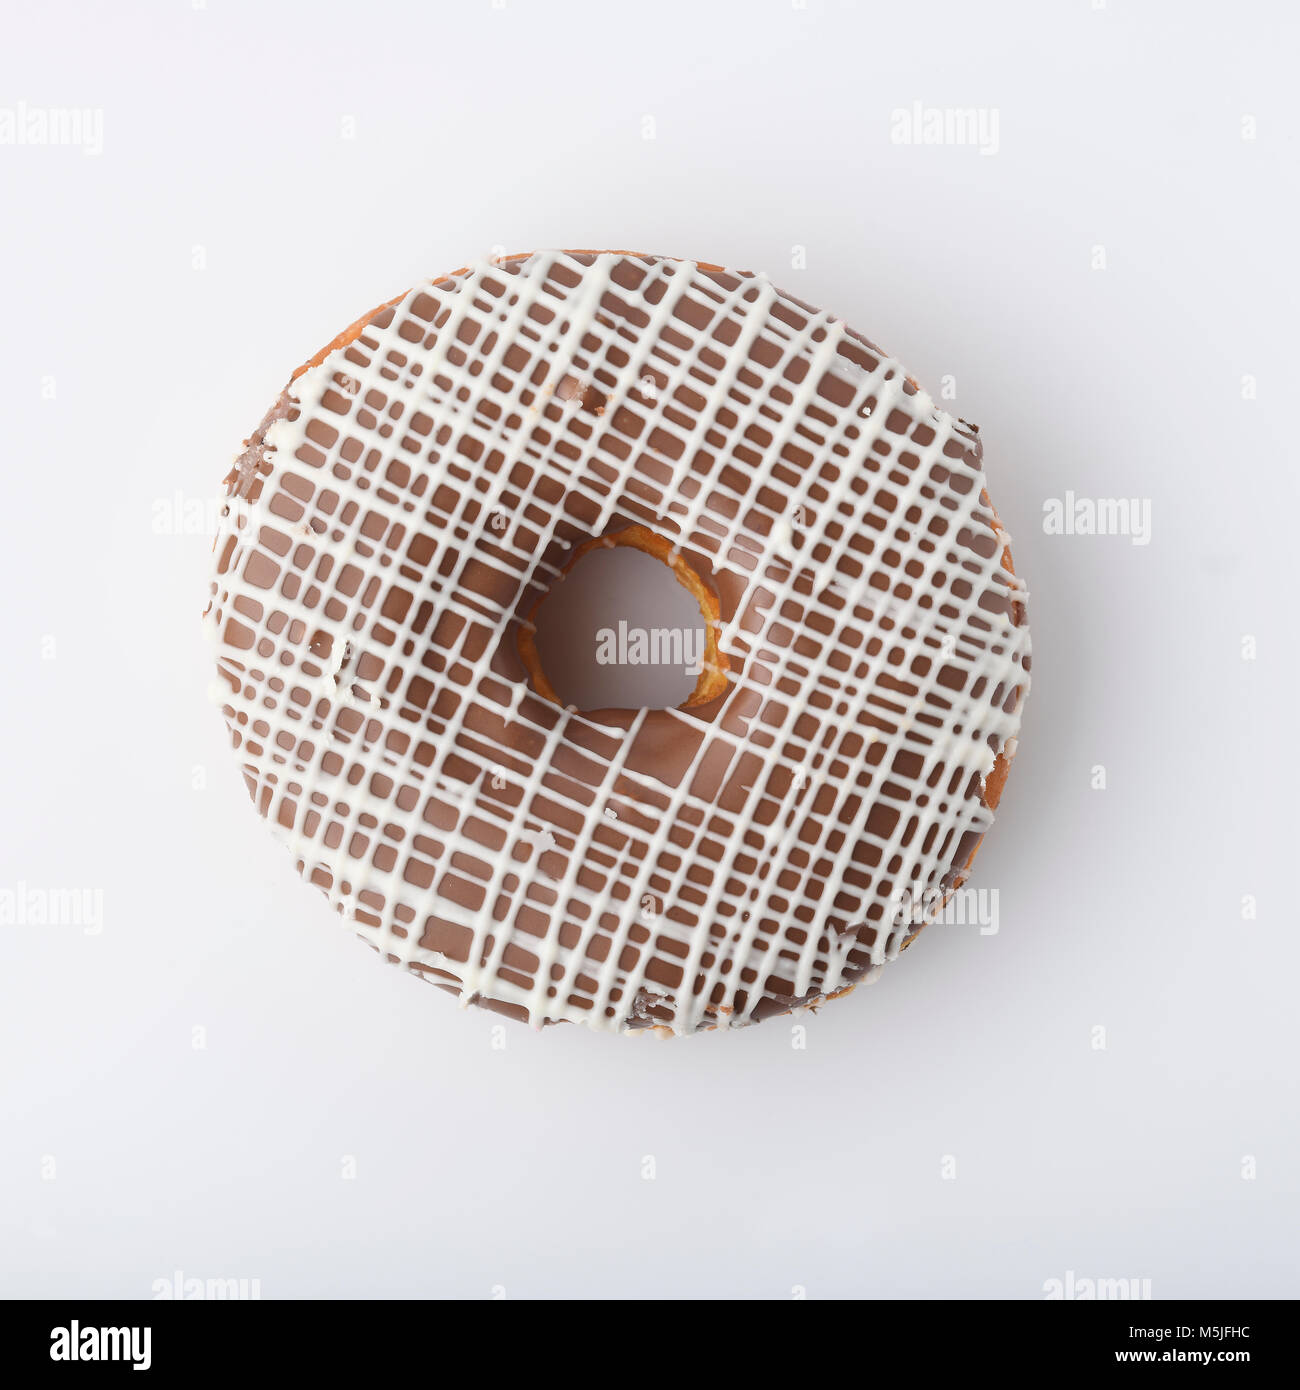 L'alimentation : Vue de dessus du chocolat Donut isolé sur fond blanc Banque D'Images